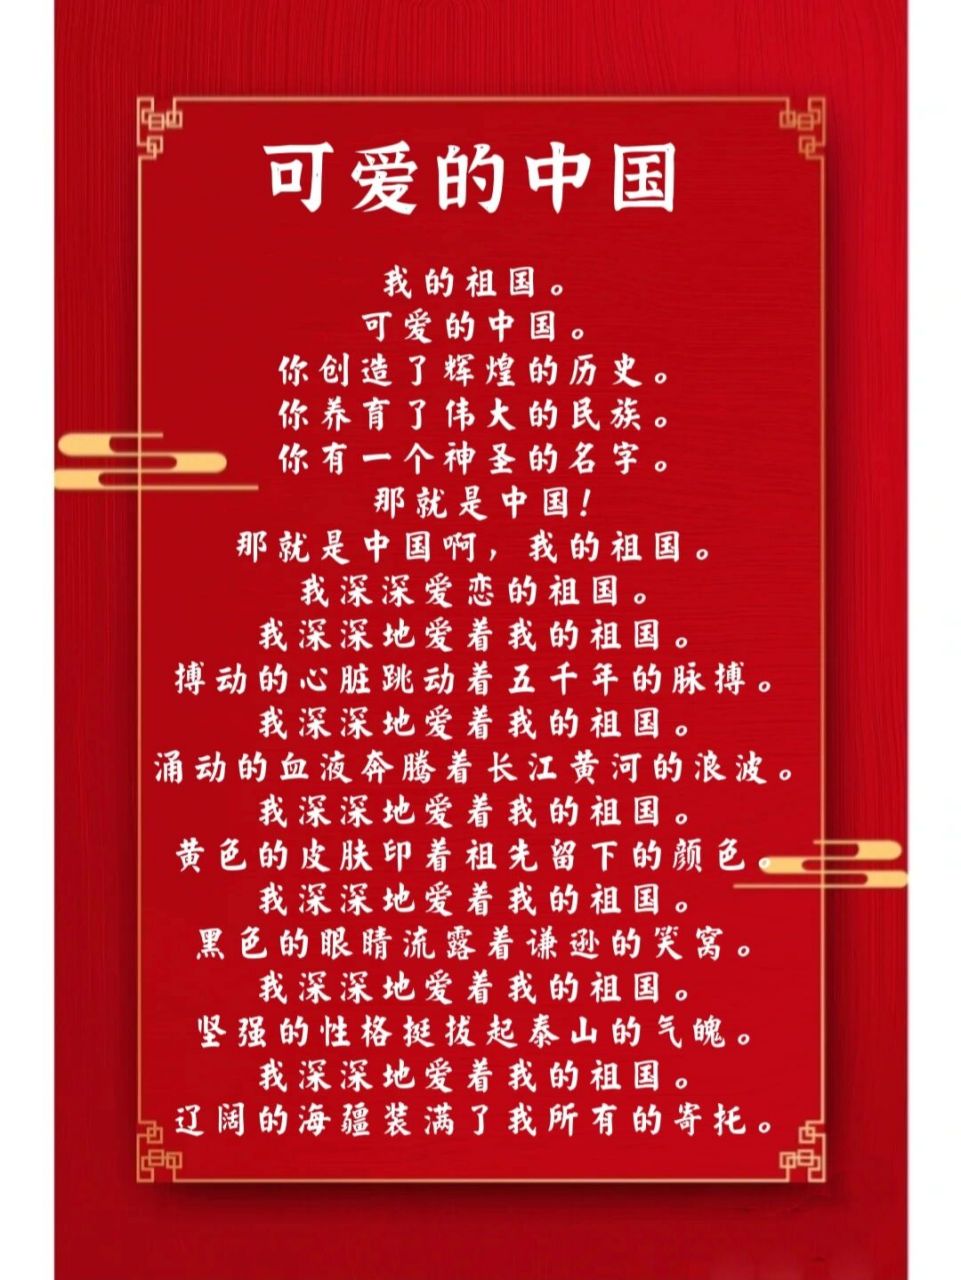 国庆节主题朗诵《可爱的中国》 适合小学生的朗诵稿,国庆节主题朗诵稿